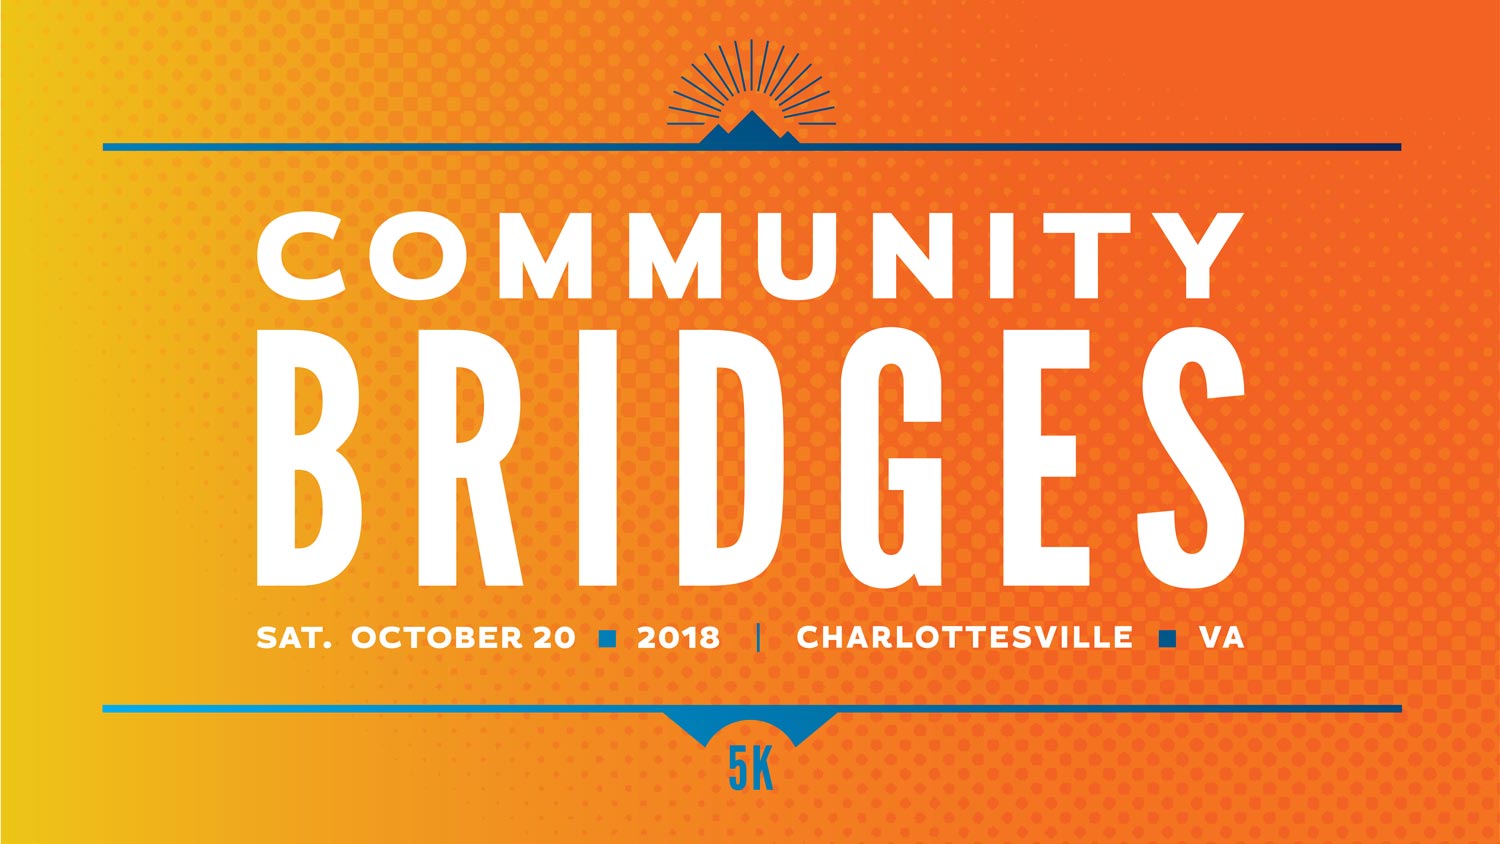 Community bridges Sat. October 20 2018 Charlottesville va 5K